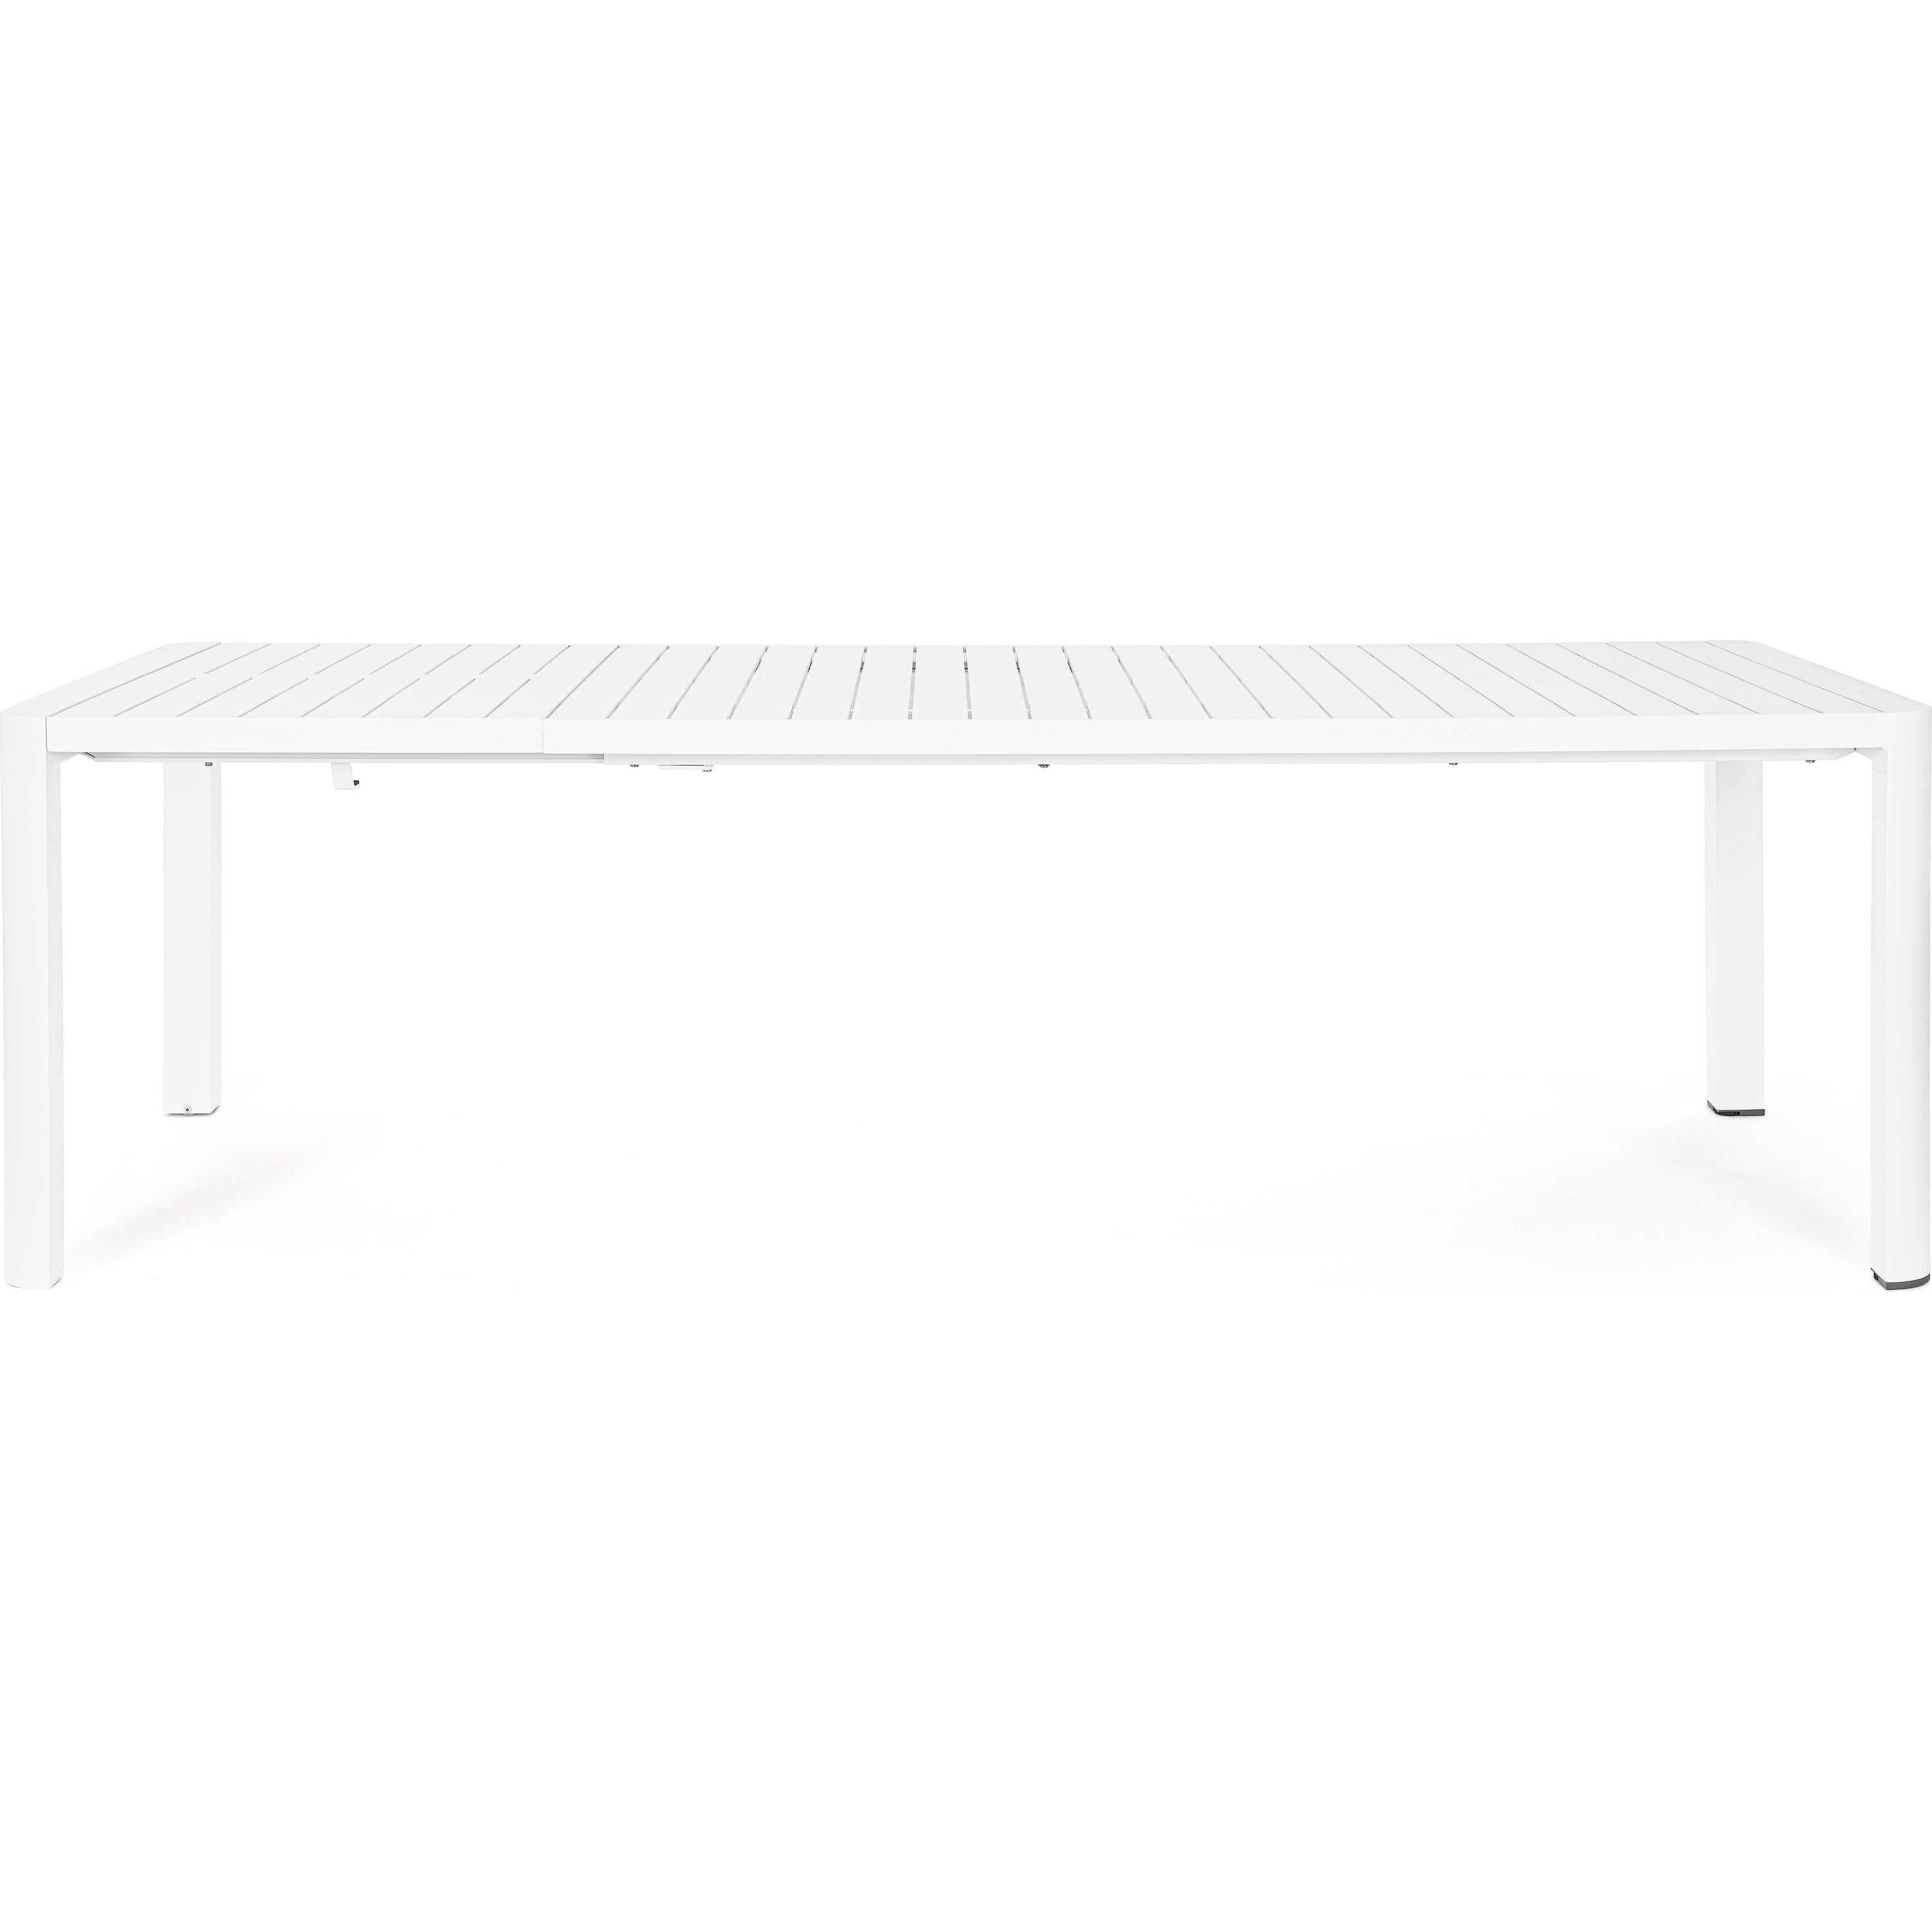 KIPLIN prasiilginantis lauko valgomojo stalas, 180-240x100cm, baltas